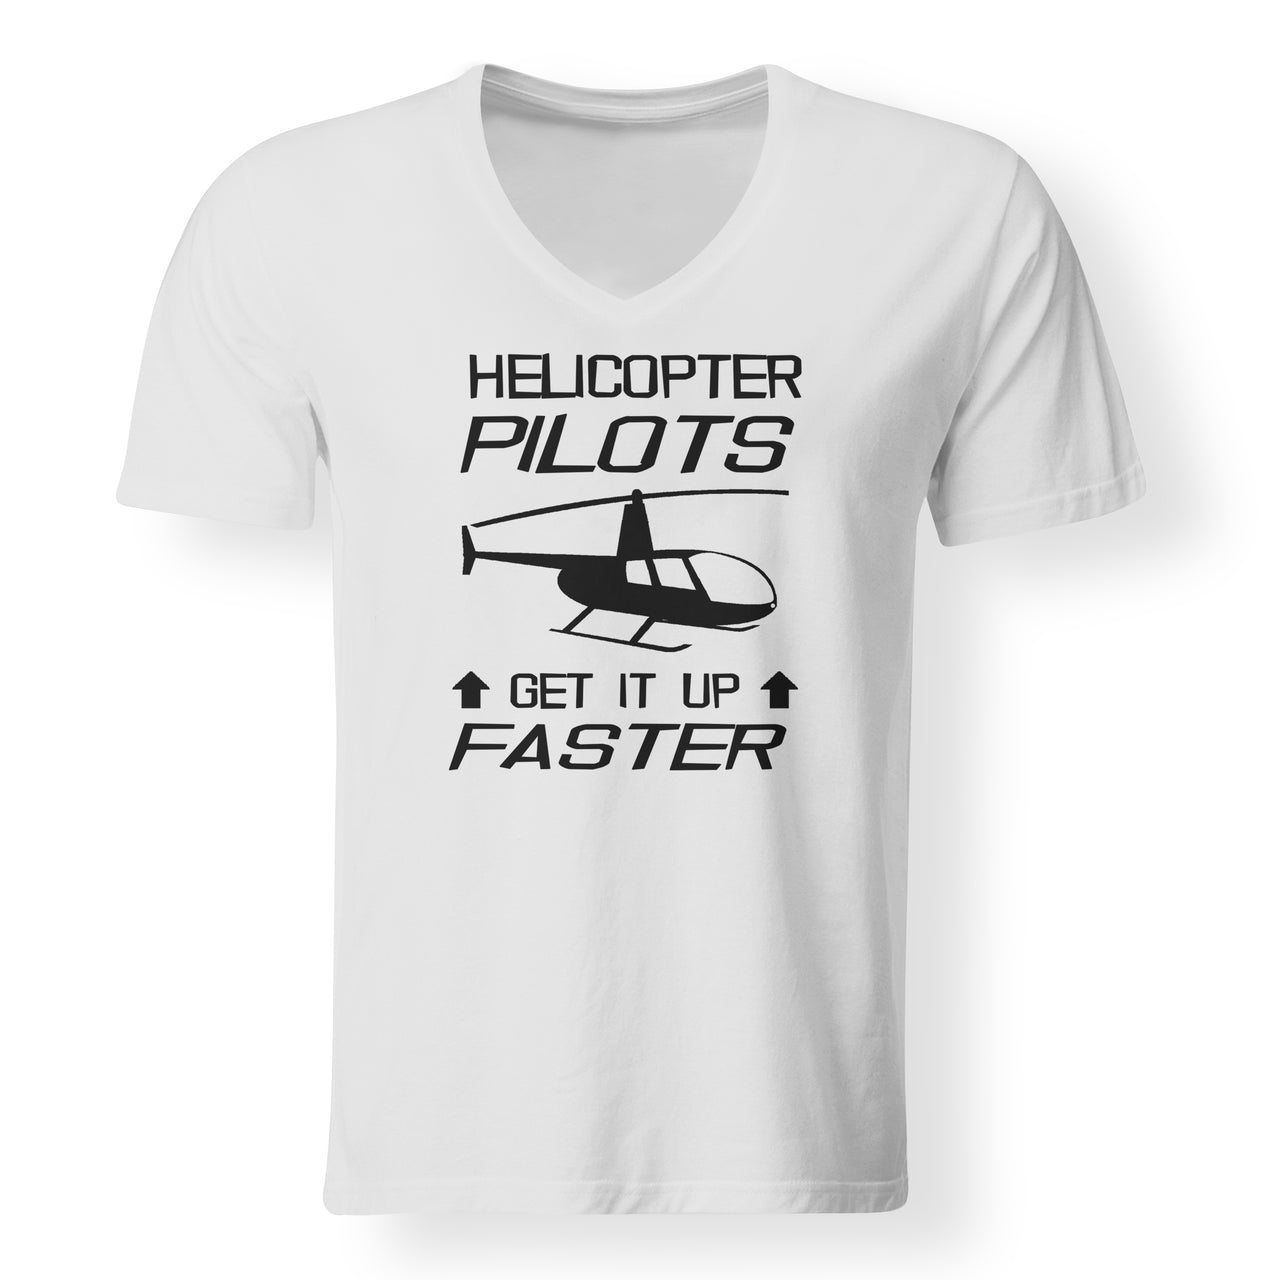 Helicopter Pilots Get It Up Faster Designed V-Neck T-Shirts